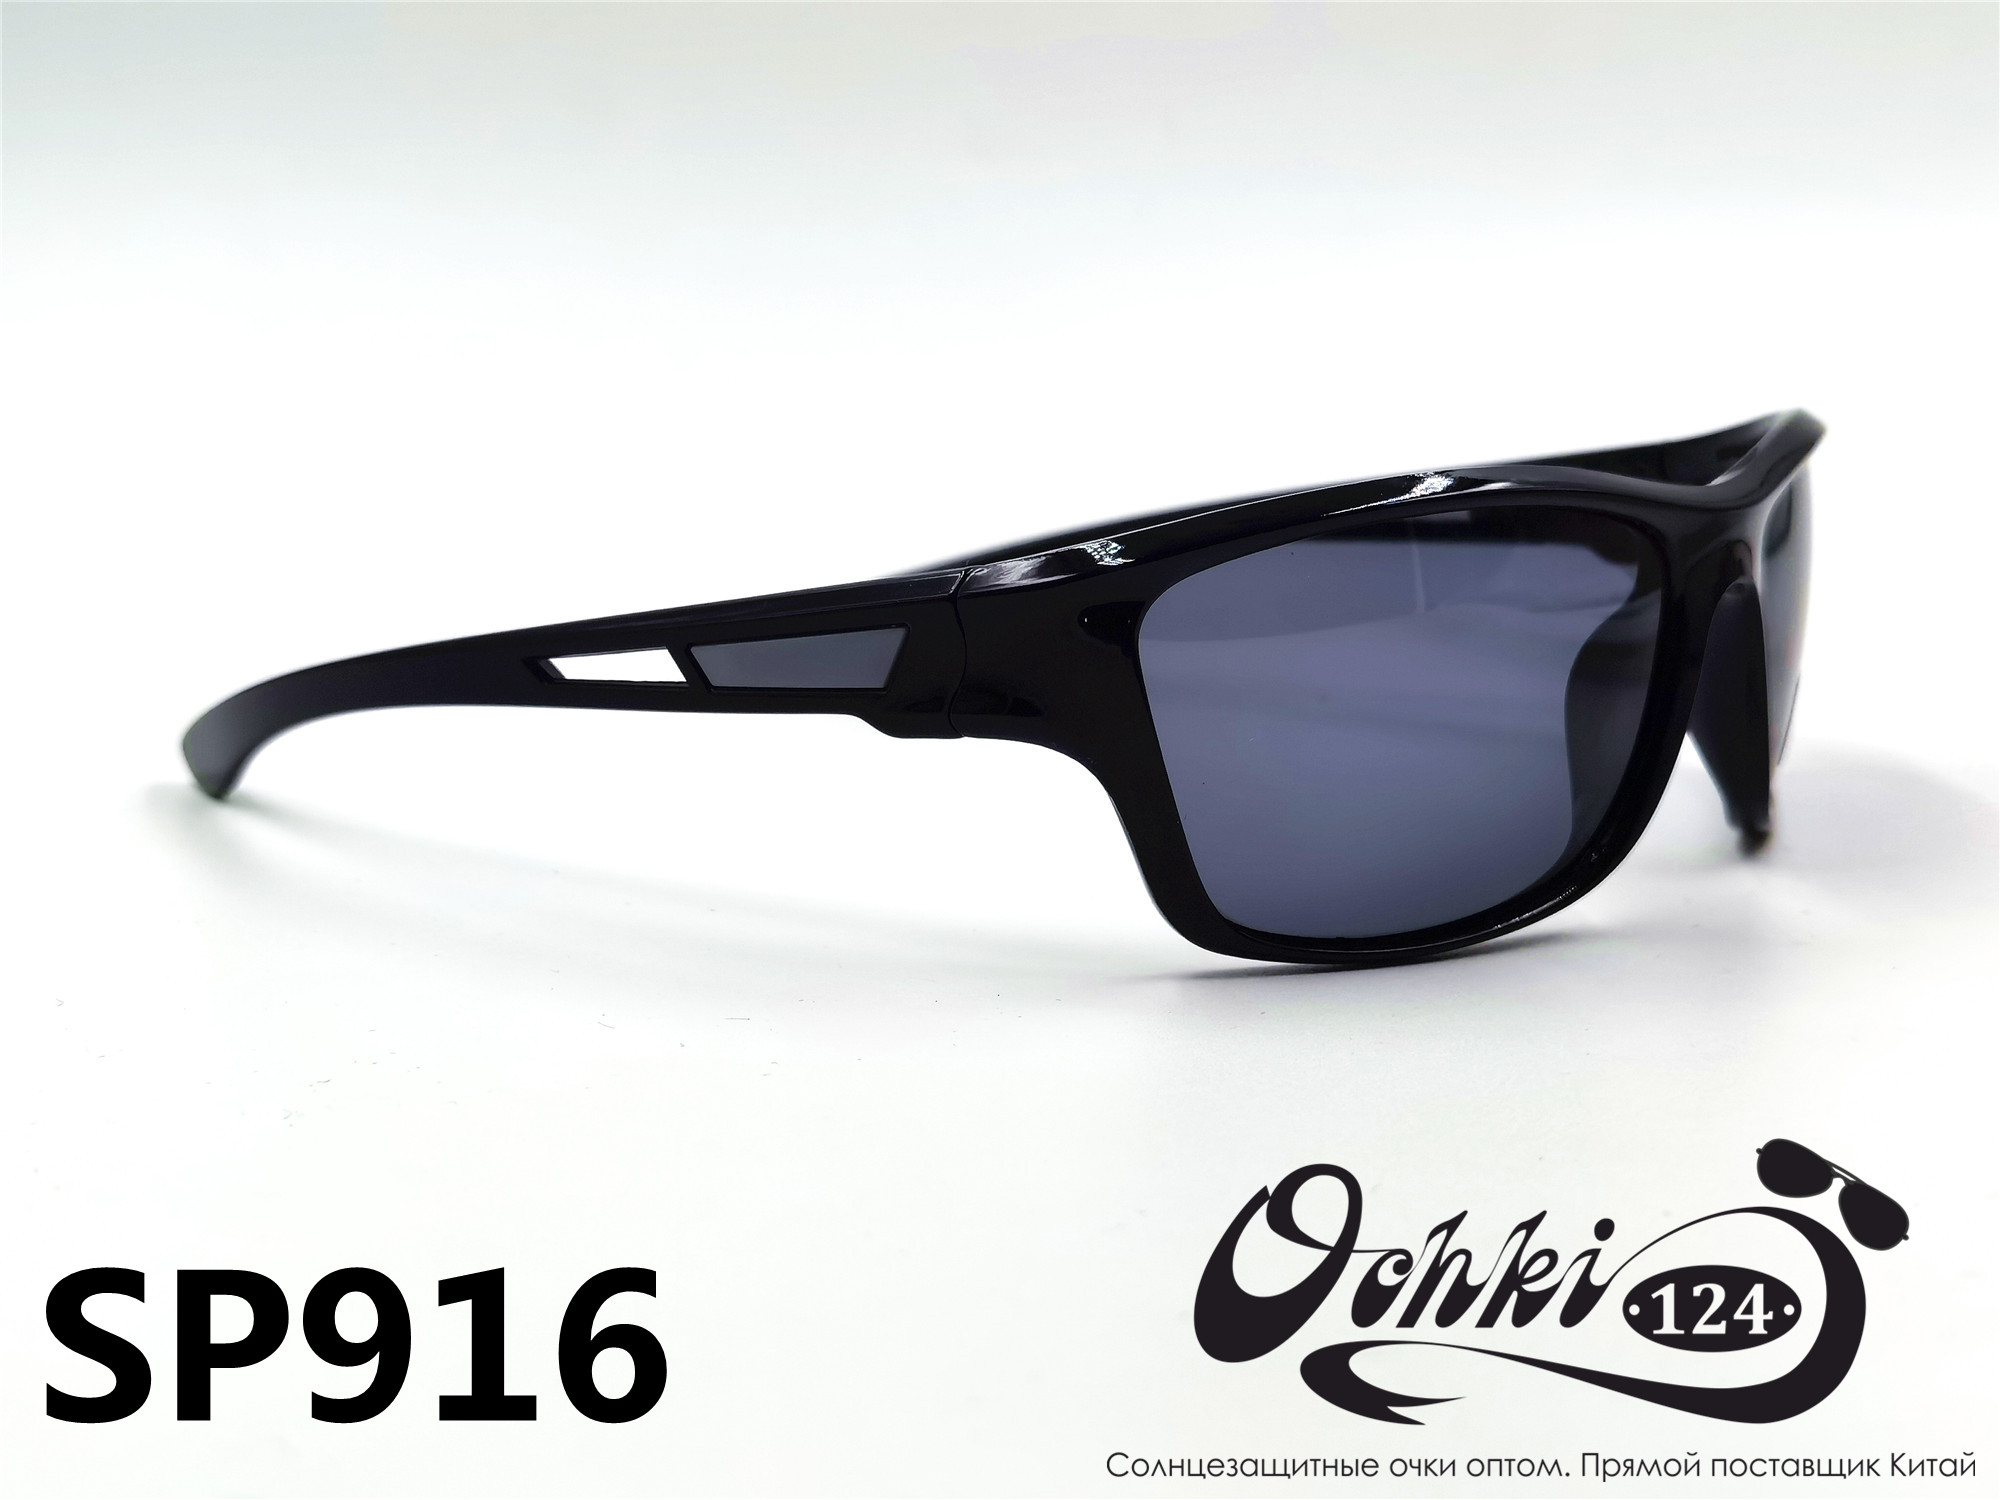  Солнцезащитные очки картинка 2022 Мужские спорт Поляризованные Materice PS916-5 